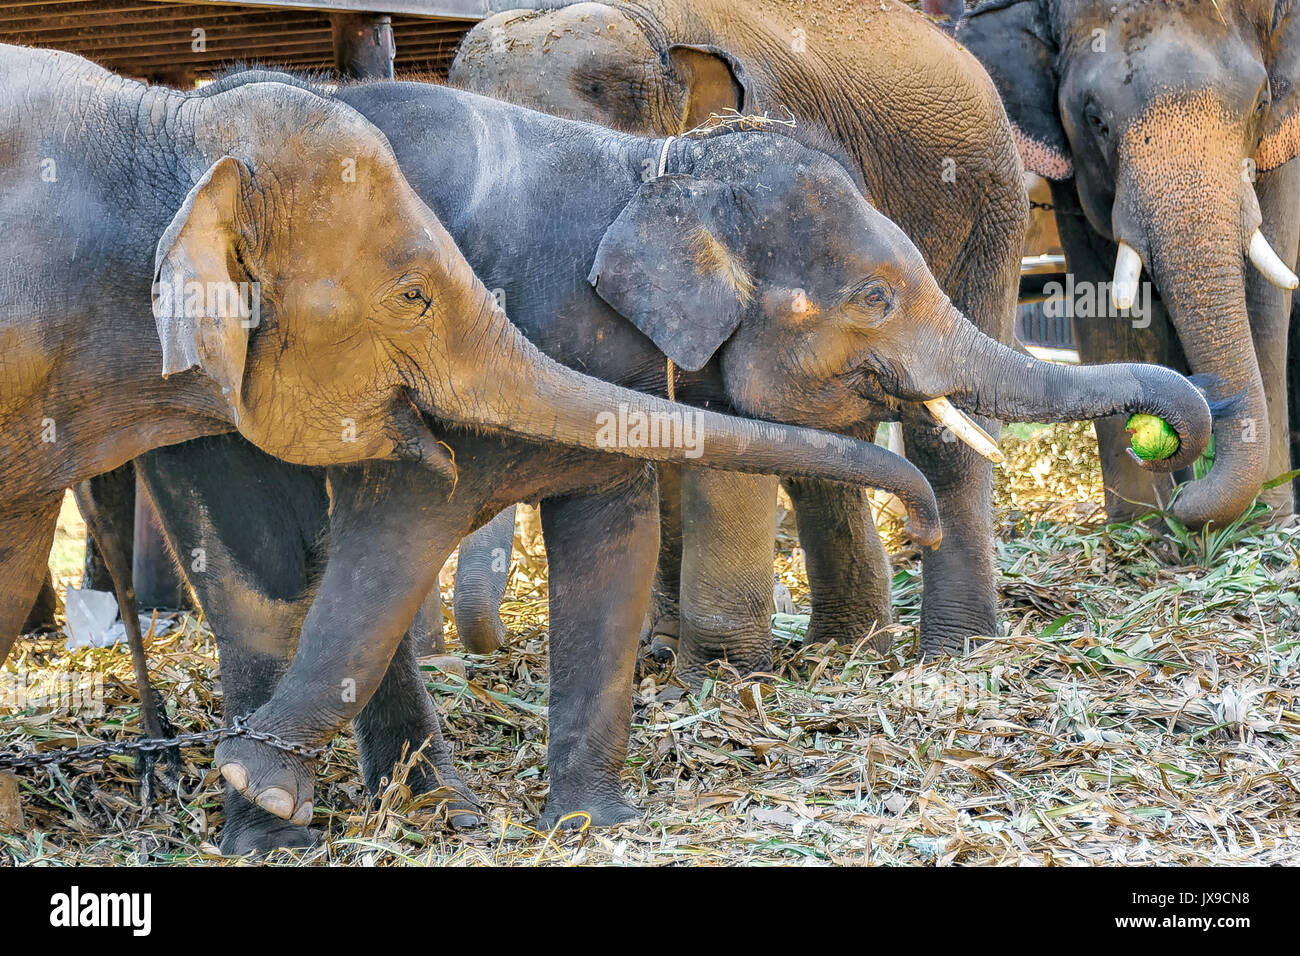 Elefanten und eine Wassermelone: junger Elefant packt eine Wassermelone mit  seinen Koffer, während ein anderer Elefant versucht, es von ihm zu nehmen  Stockfotografie - Alamy